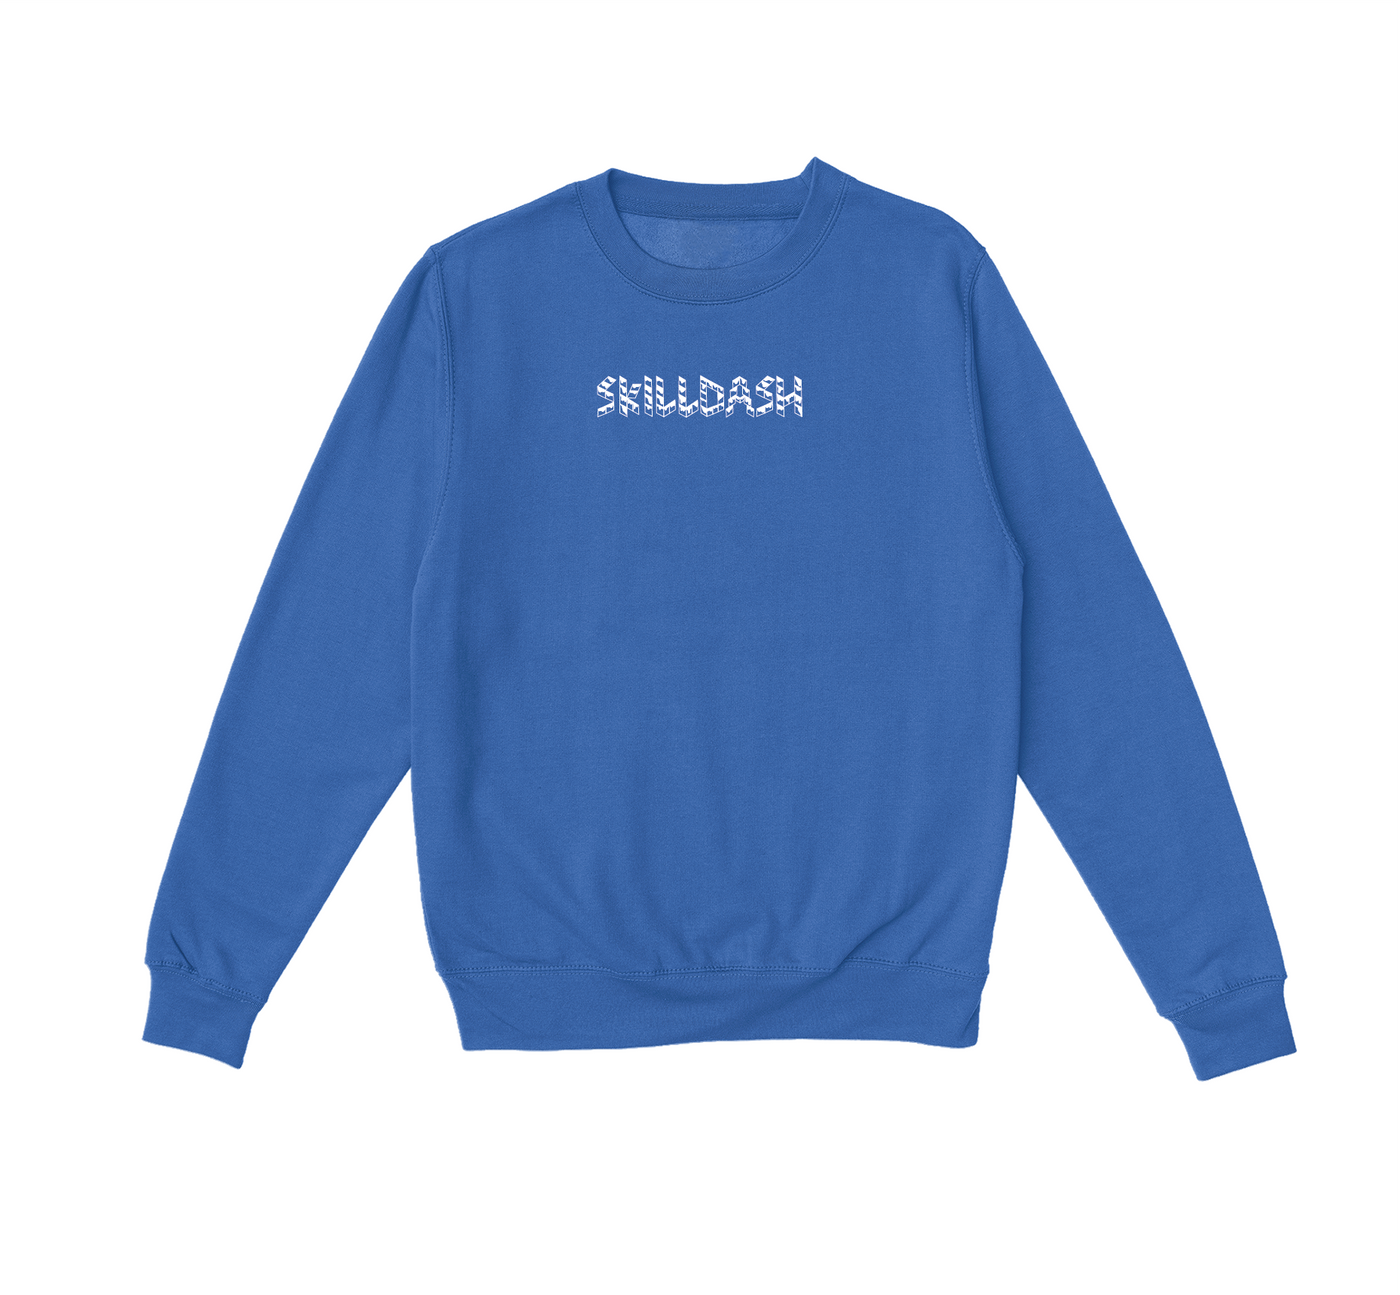 Grind On Sweatshirt - Skilldash